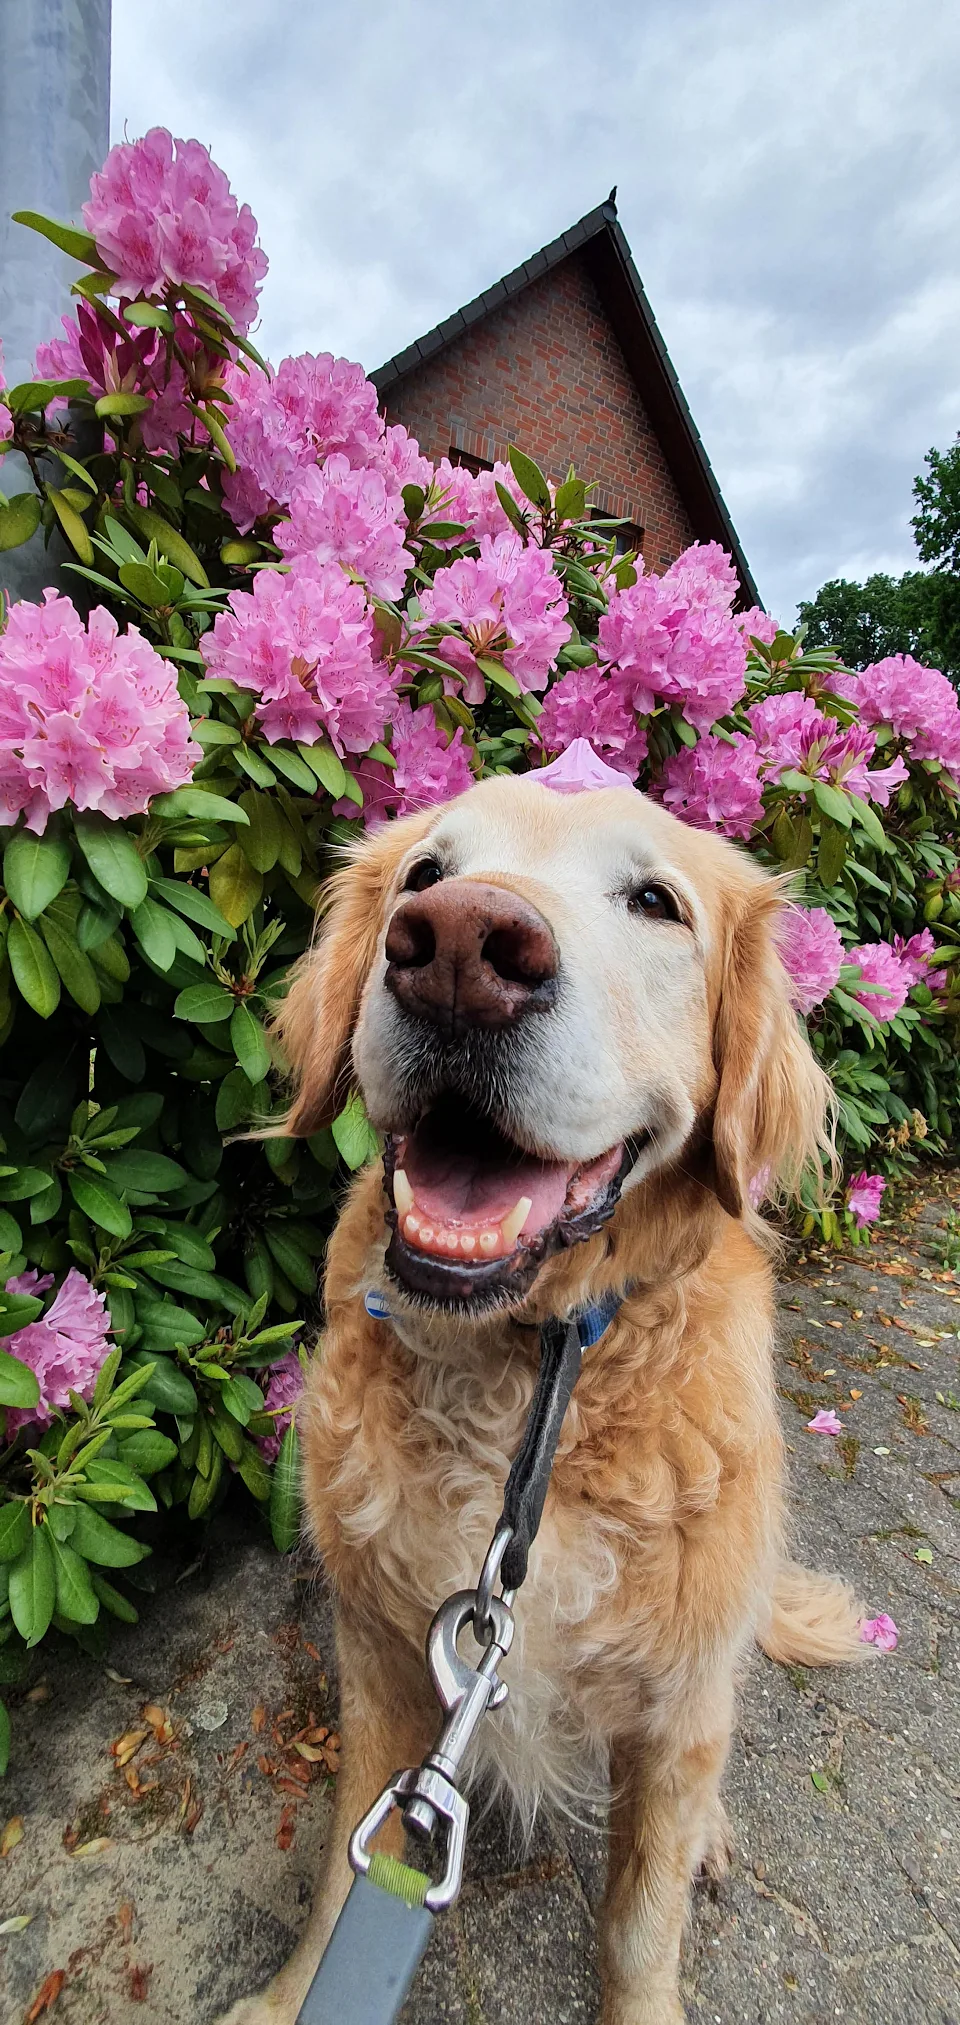 A very good flower boy